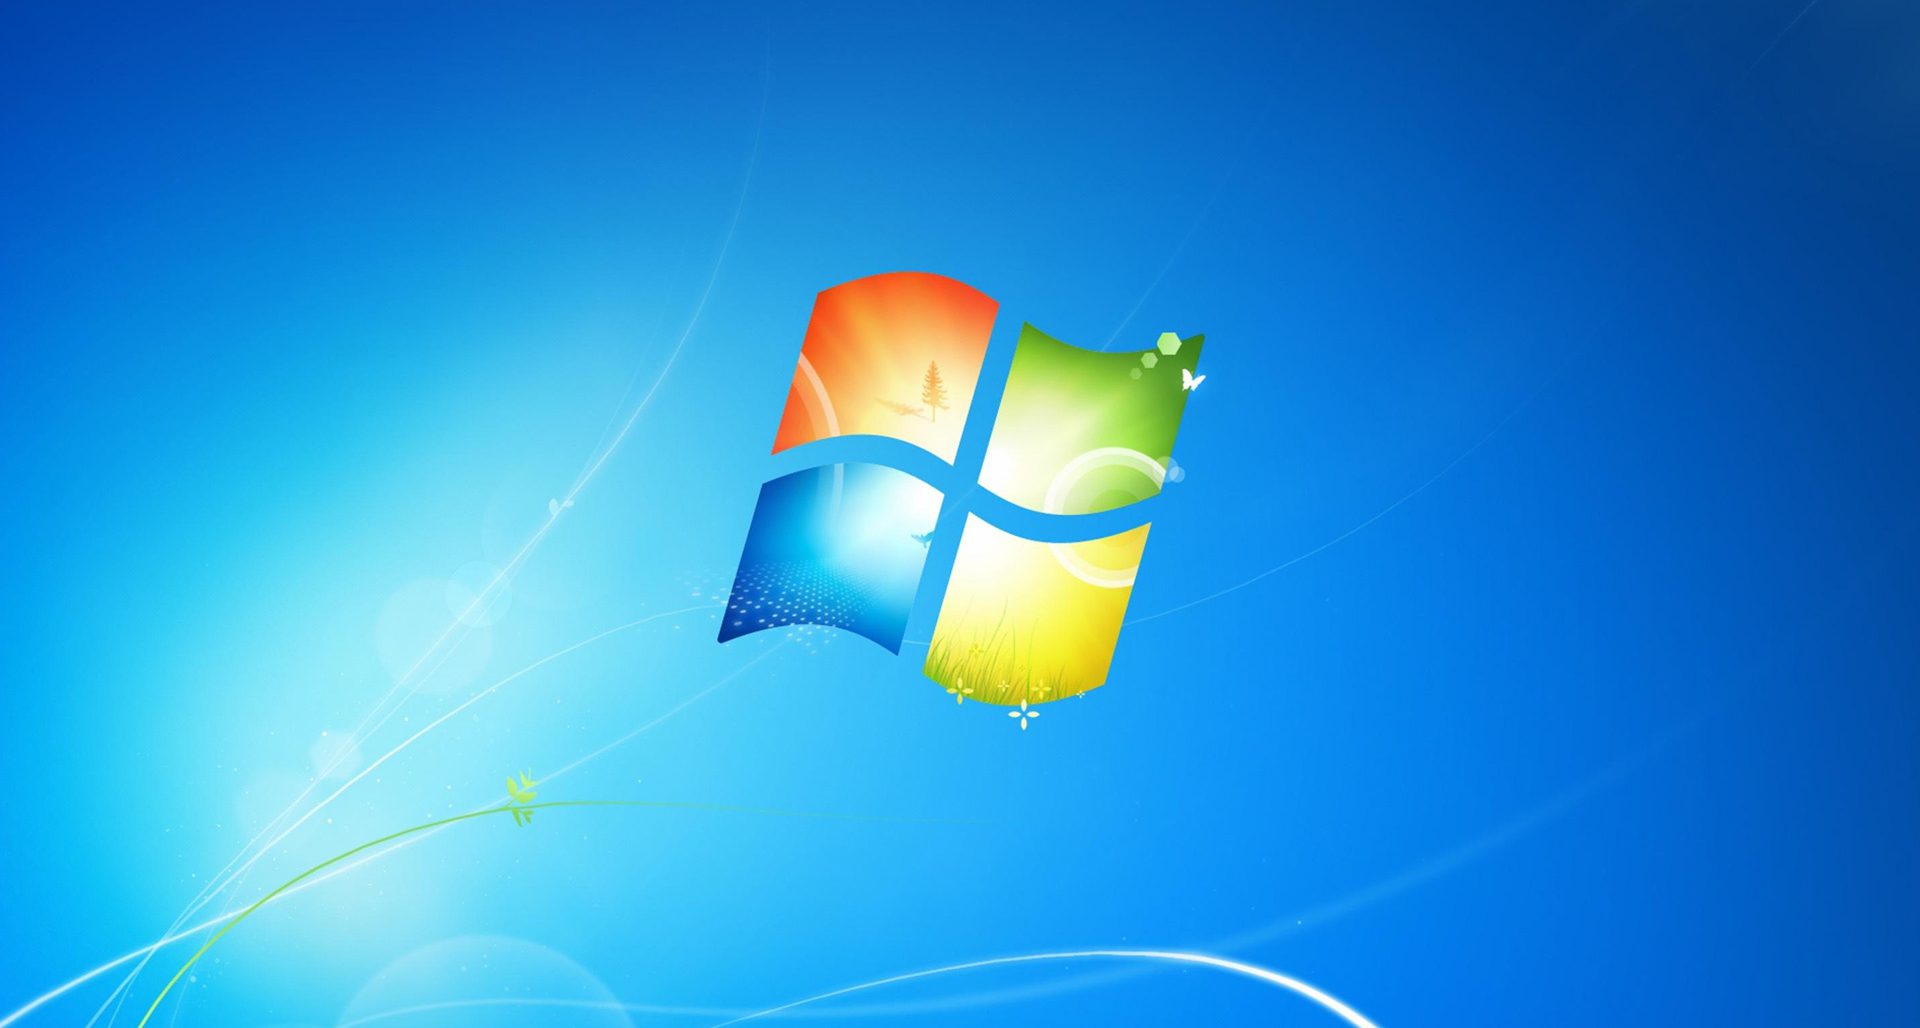 Unterstützung für Windows 7 schließt diese Woche. Erfahren Sie, wie Sie kostenlos upgraden können